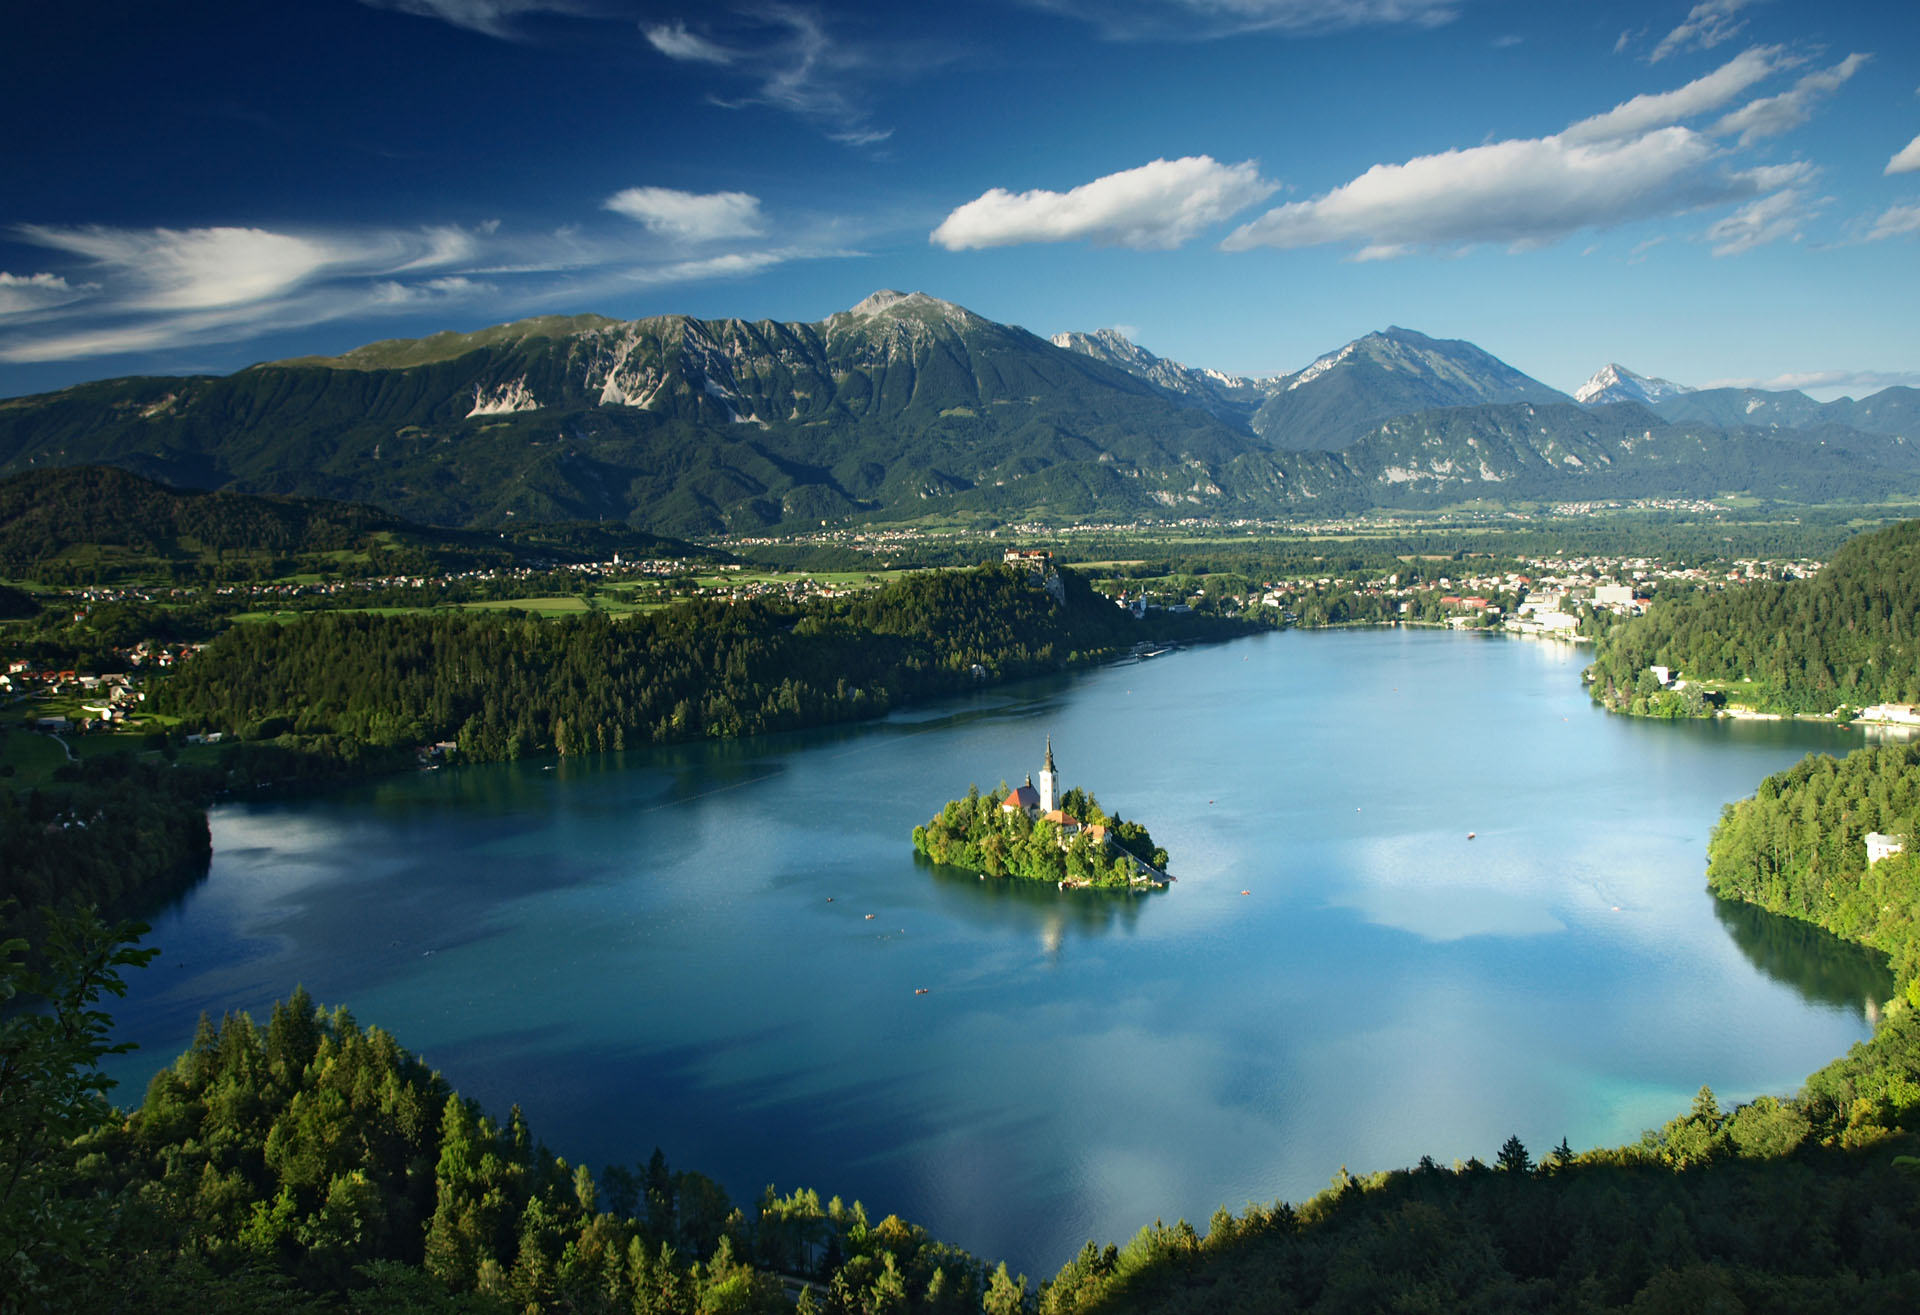 Bled je naselje ob Blejskem jezeru, spada med starejše in najlepše turistične kraje v Sloveniji. Leži na nadmorski višini 507,7 m, sredi razgibane, ledeniško preoblikovane pokrajine, na prehodu iz Radovljiške kotline v vzhodno vznožje Julijskih Alp.